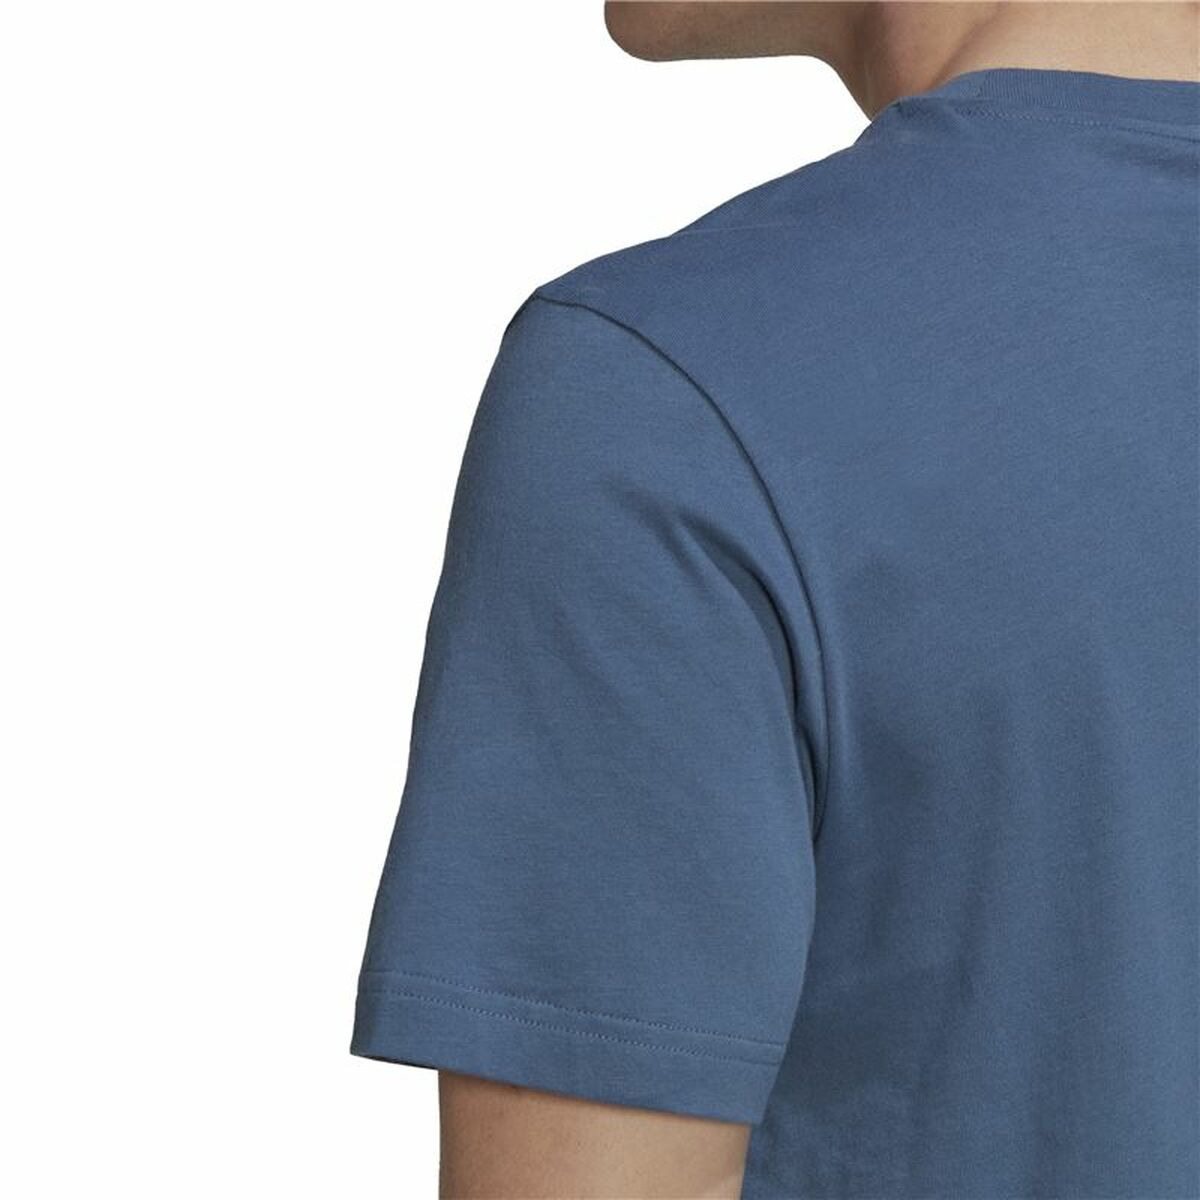 Men’s Short Sleeve T-Shirt Adidas All Blacks